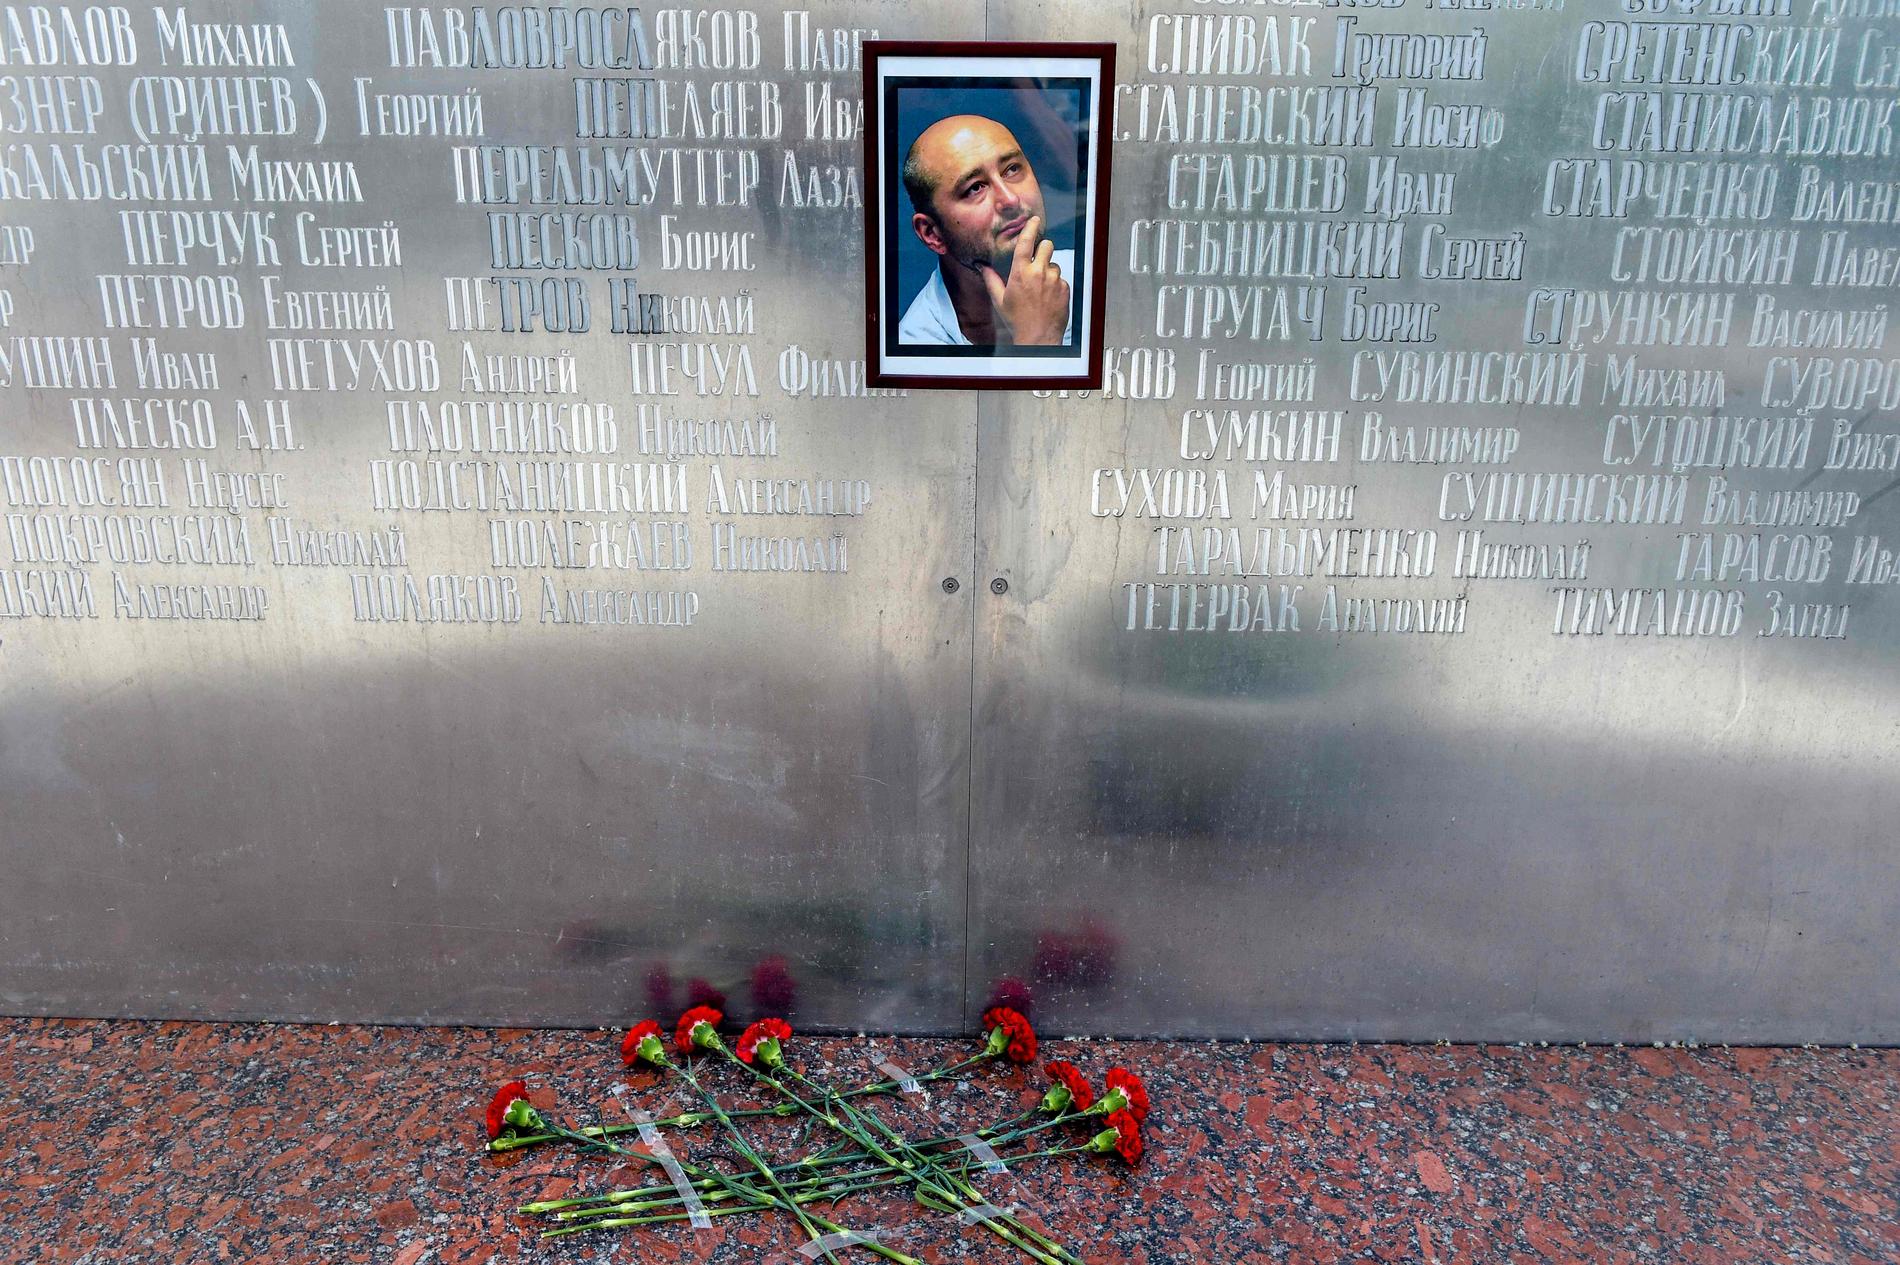 Vid journalisternas hus i Moskva lämnade sörjande rosor framför ett porträtt av Babtjenko, innan det kom fram att hans död var iscensatt.